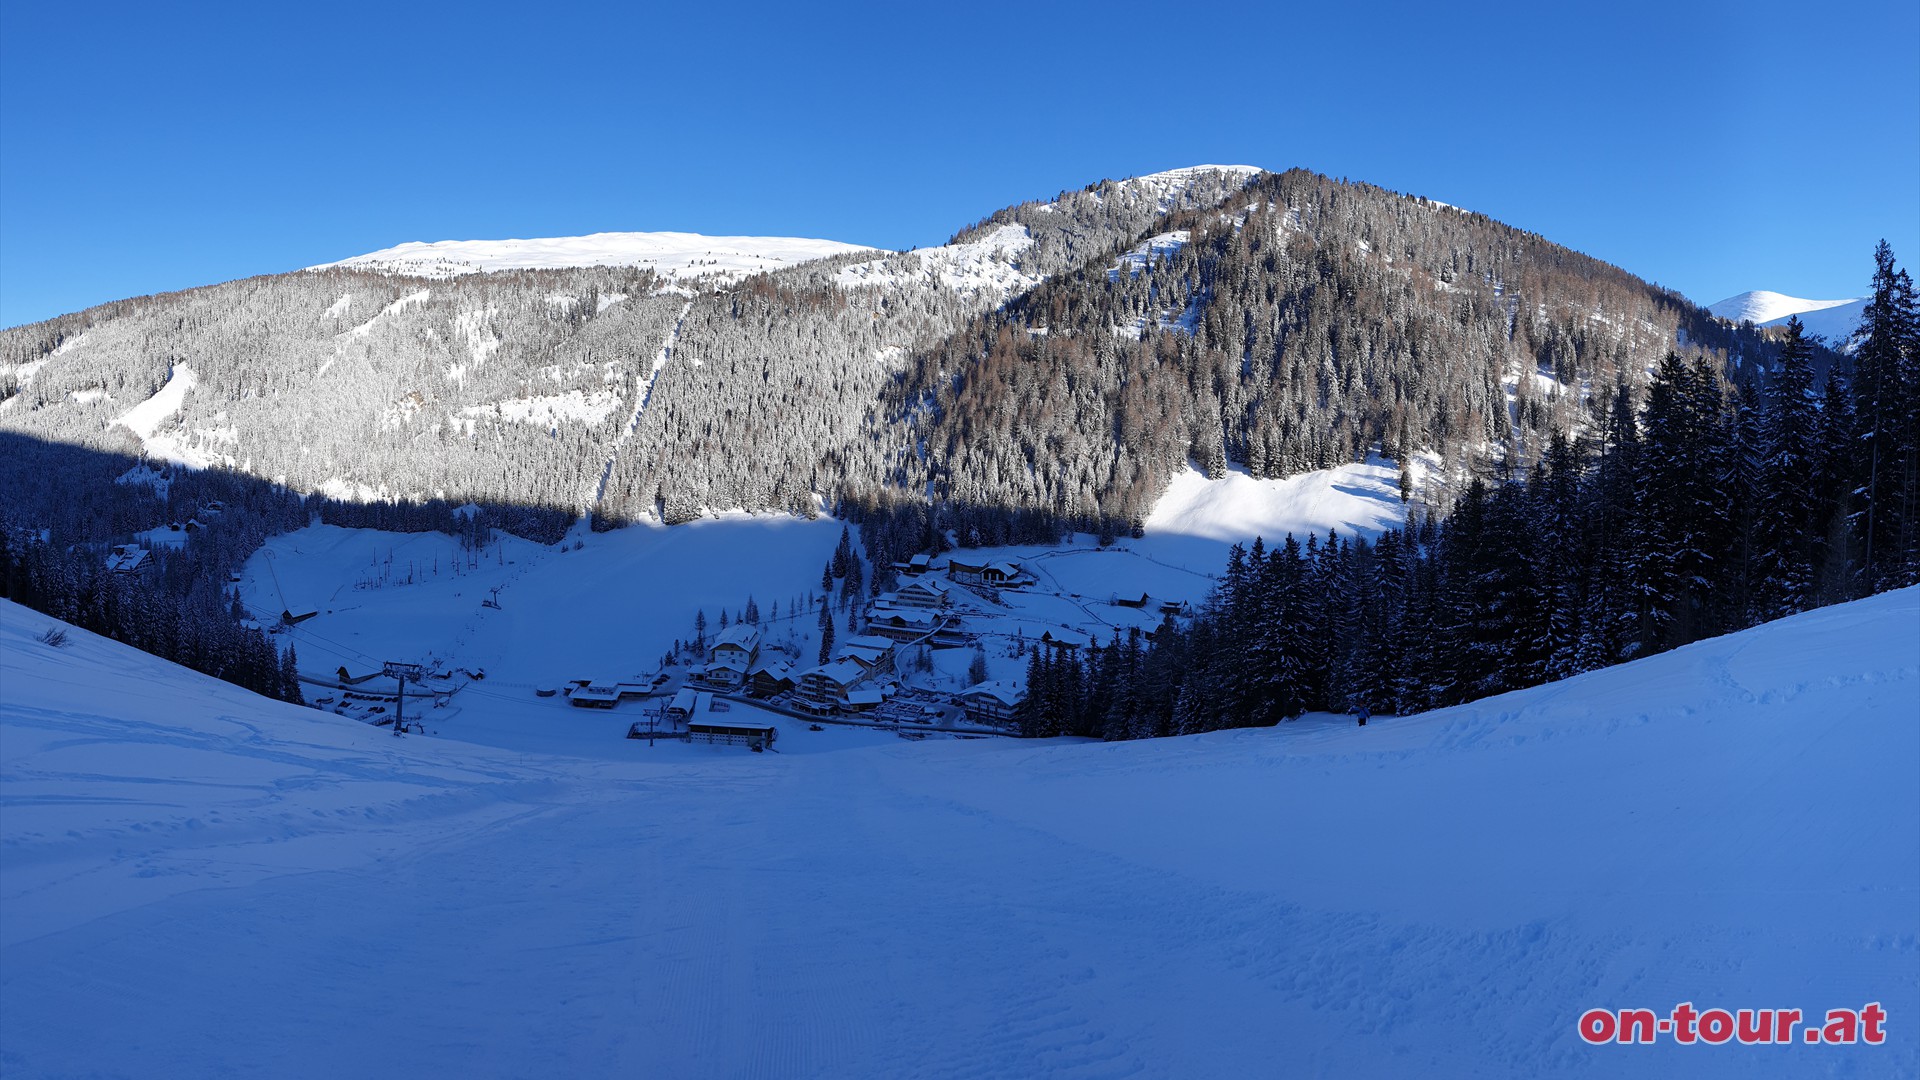 Start; Parkplatz beim Skigebiet in Innerkrems. Aufstieg ber die Skipiste Richtung Sden